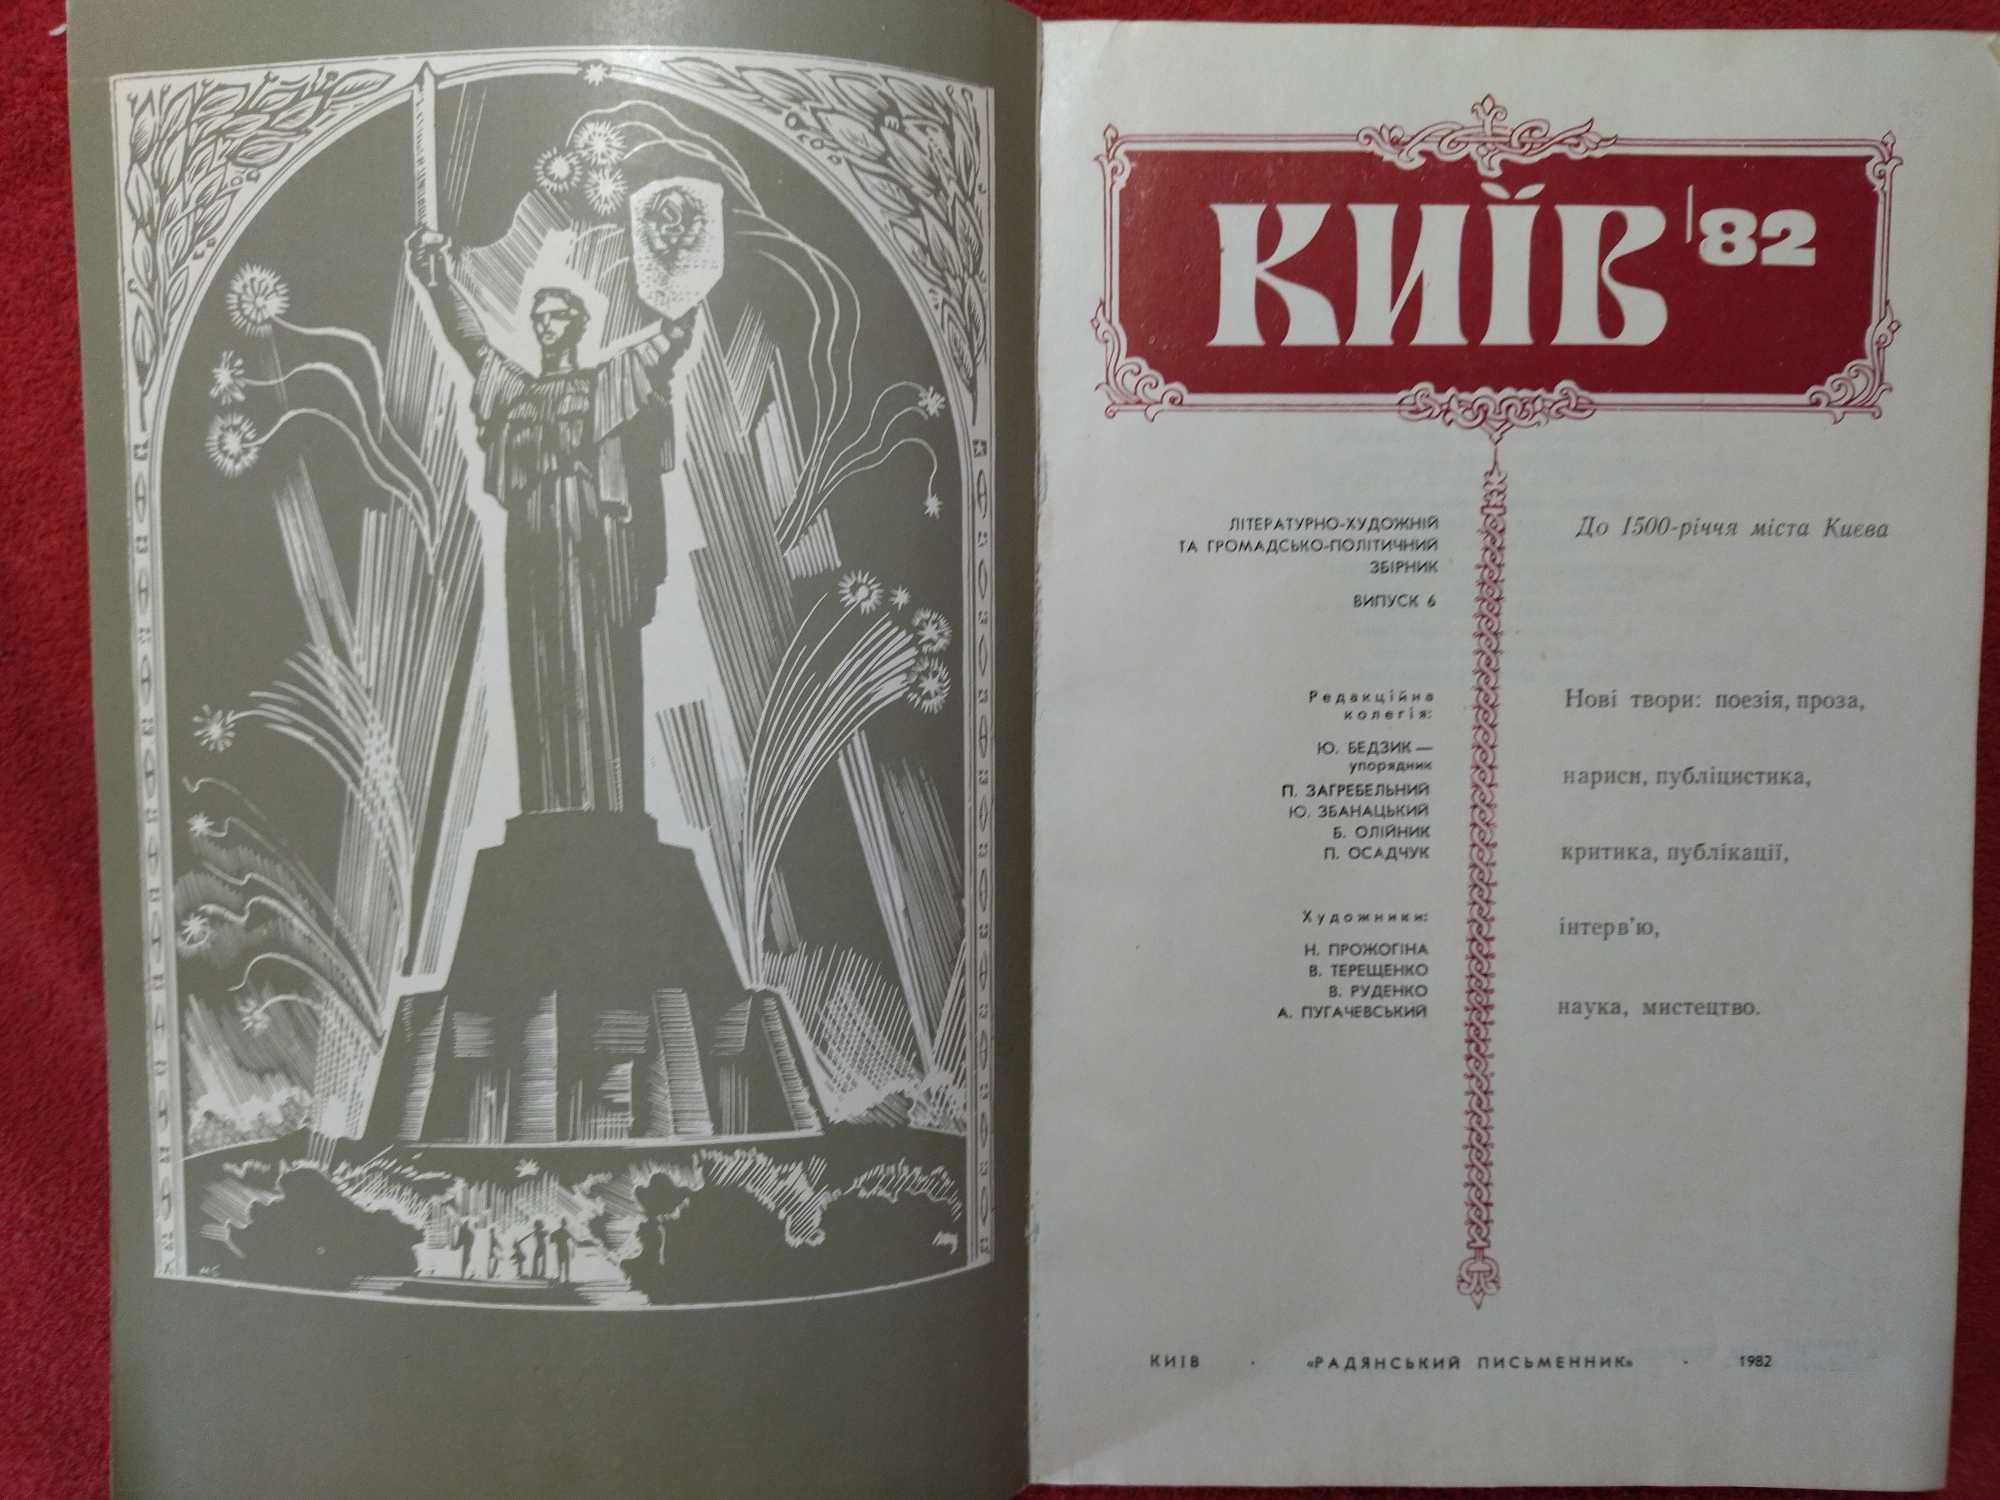 Сбірник до 1500-річчя міста Києва (6 випуск) 1982 р.